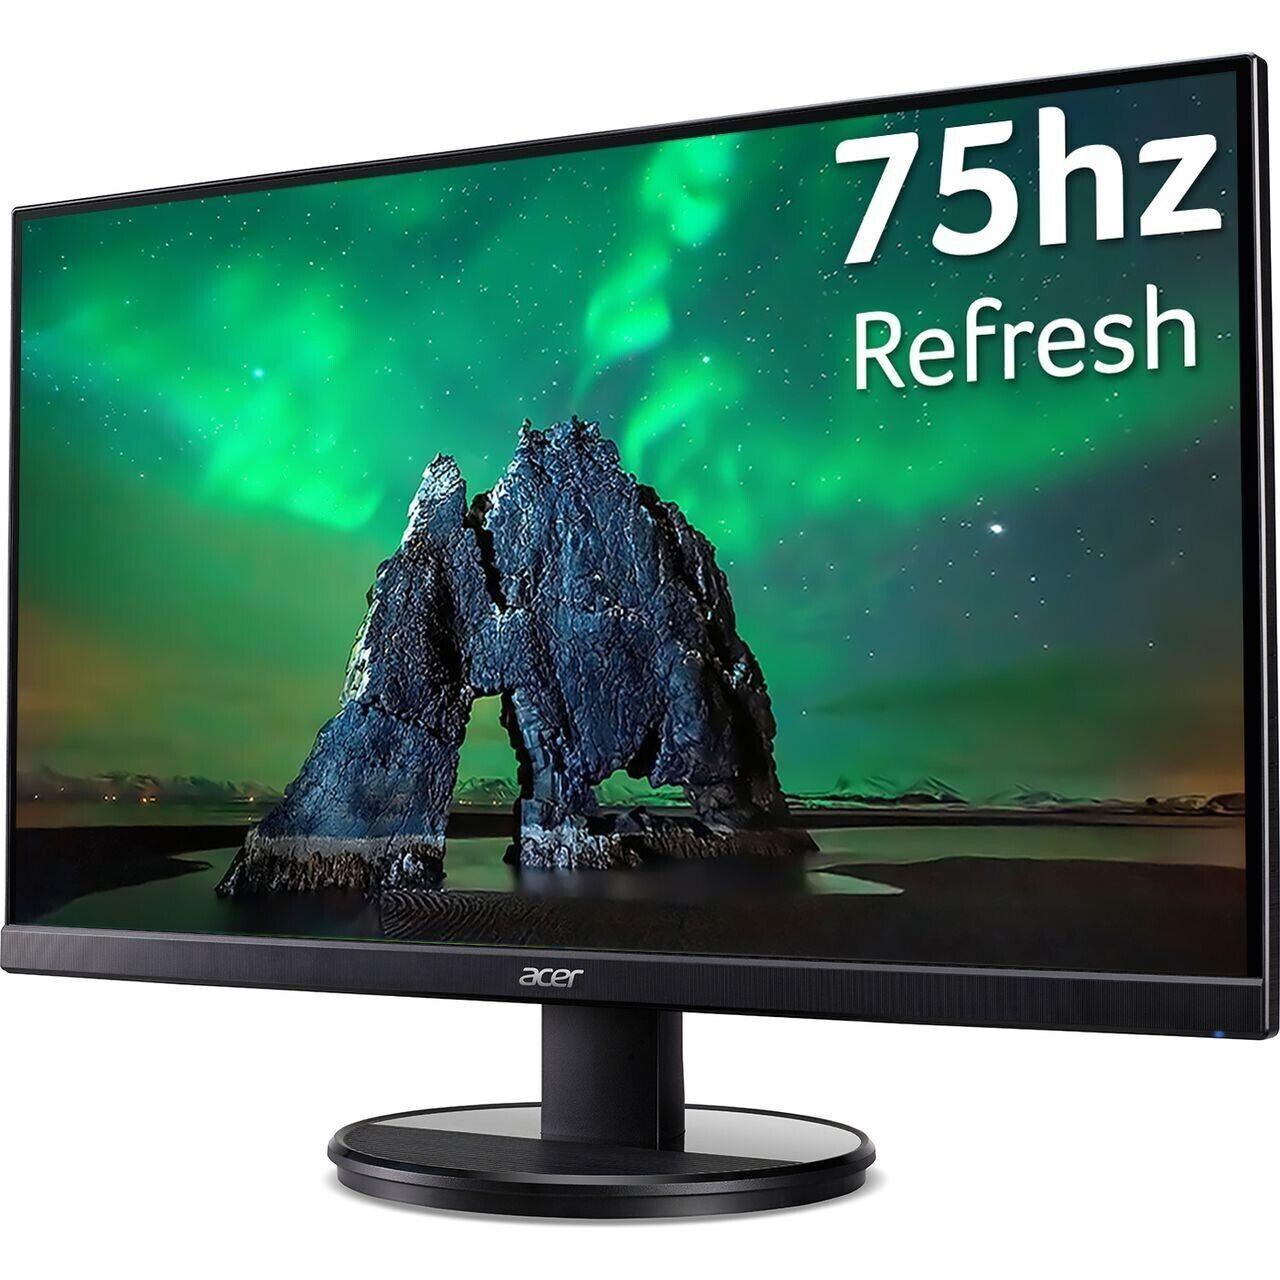 Acer K242HYL 23.8" Full HD VA LED Gaming Monitor - Black (UM.QX2EE.H02) U - Smart Clear Vision